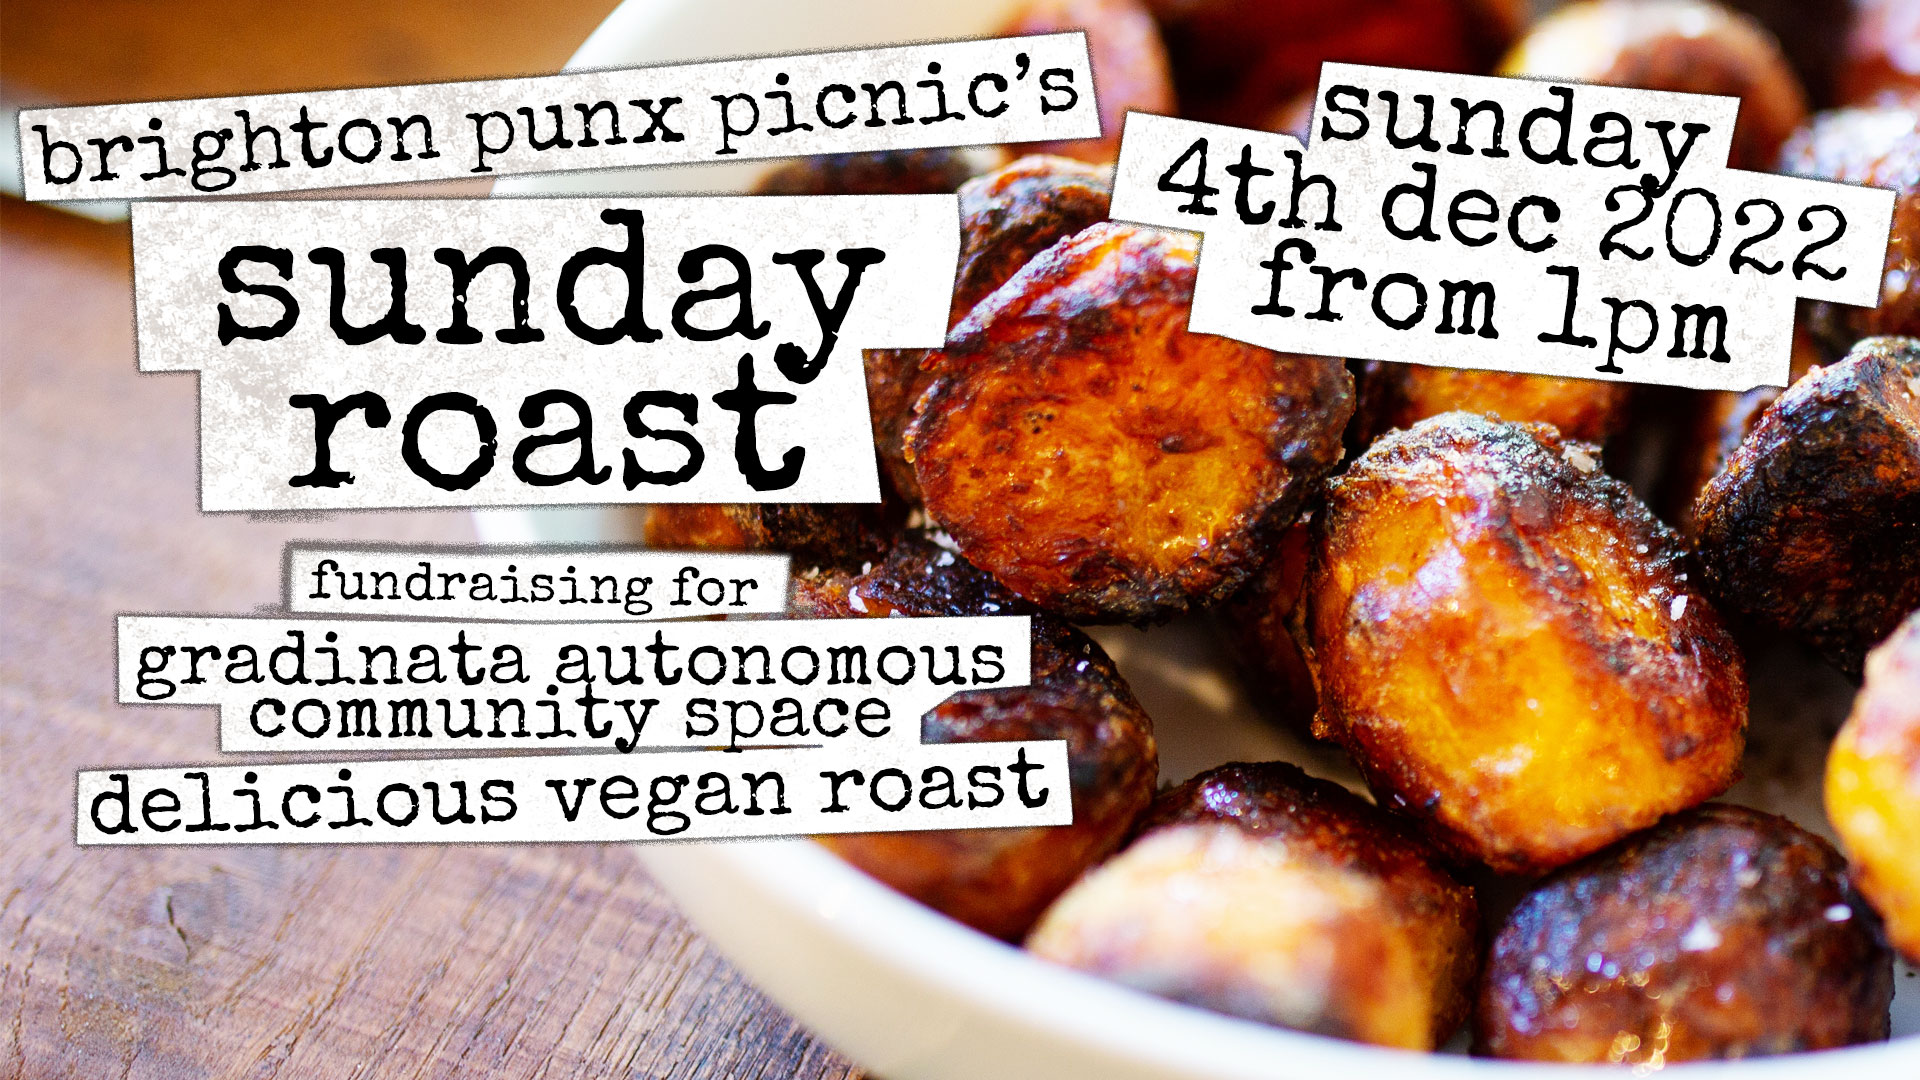 Punx Picnic Sunday Roast